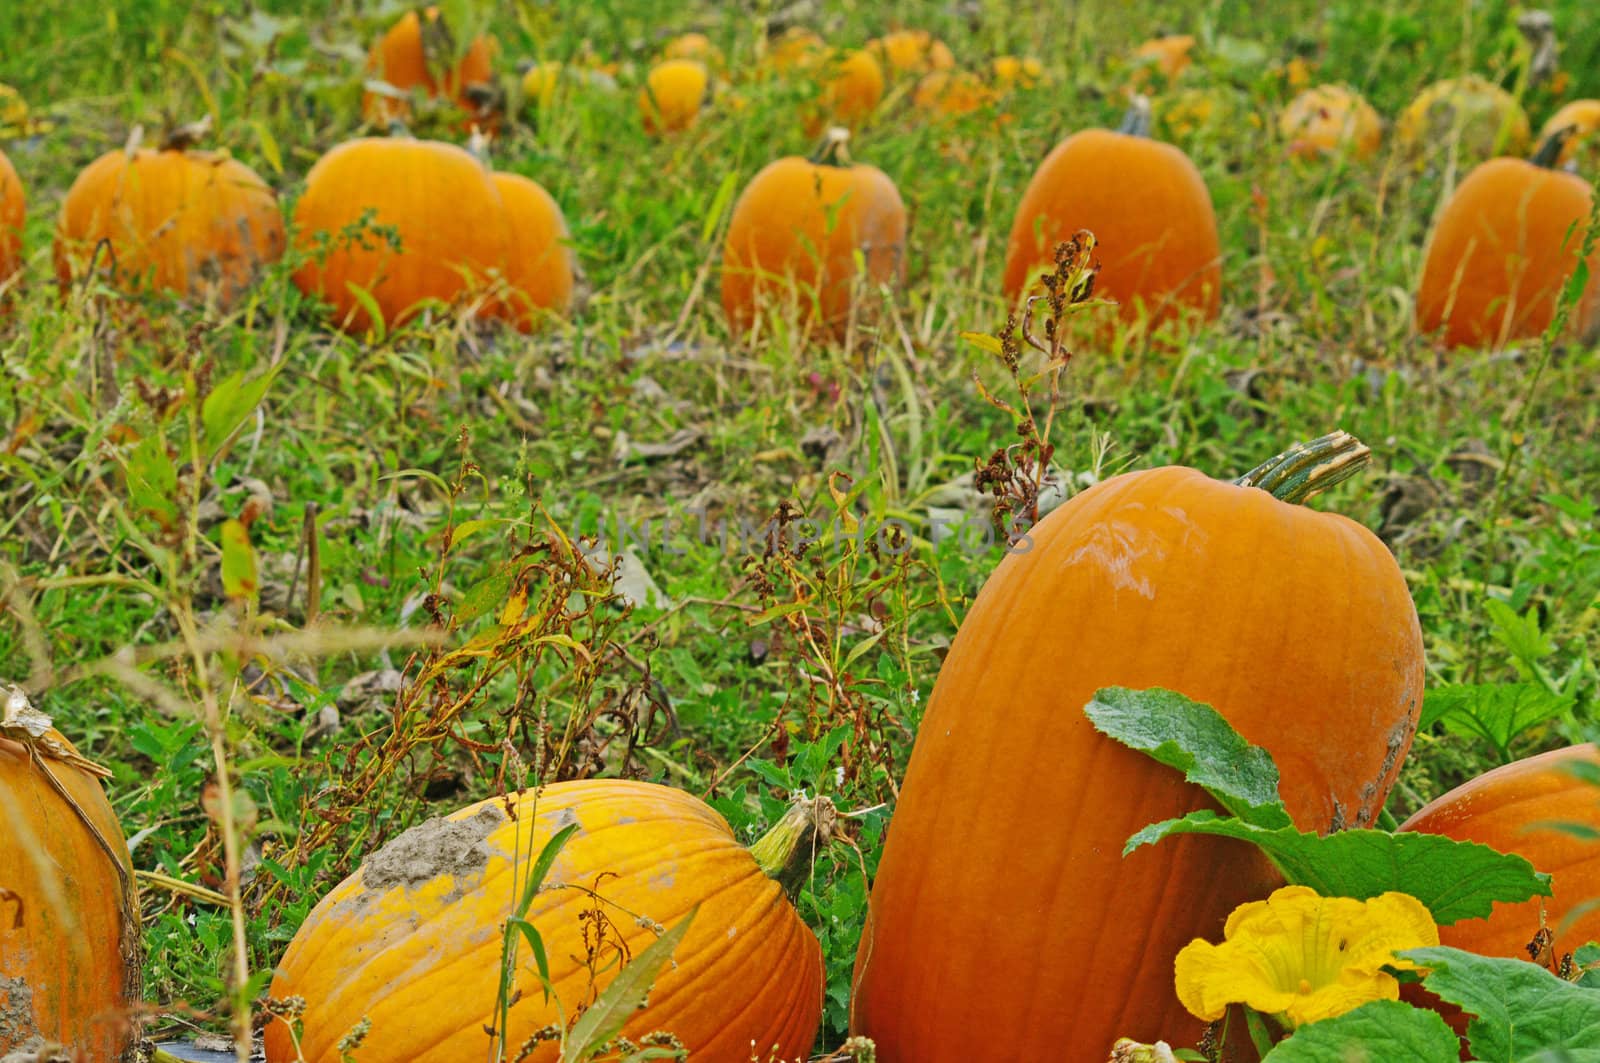 Pumpkins in the field by edcorey